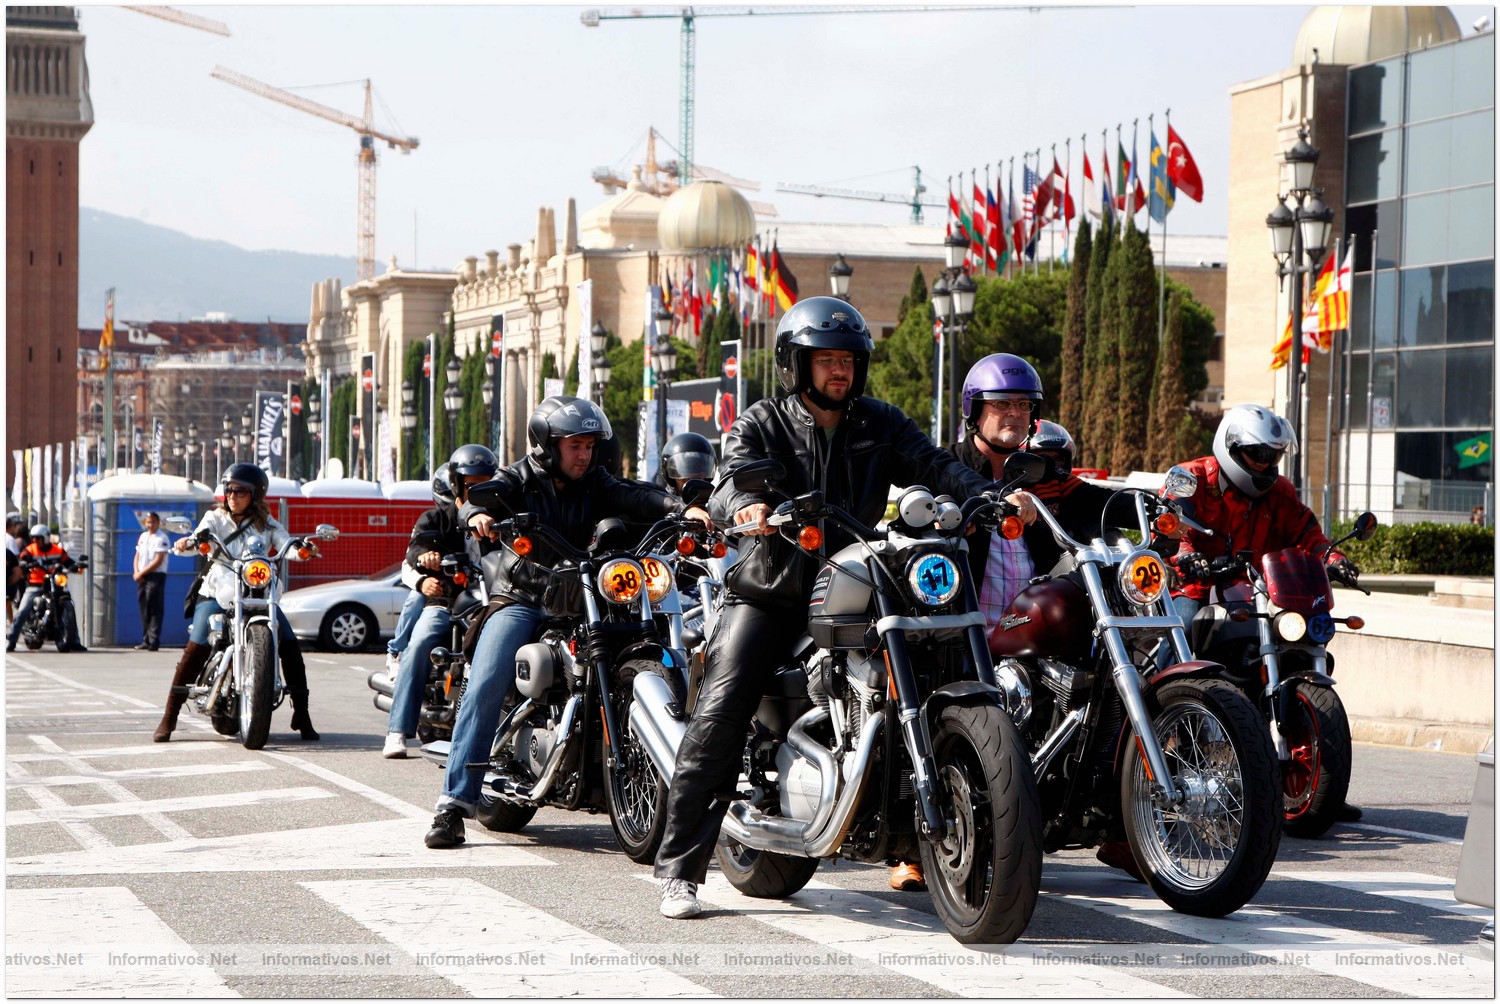 Del 18 al 20 de junio en la Av. Reina Maria Cristina de Barcelona Harley-Davidson ofrece pruebas de motos gratuitas por Montjuïc durante el Barcelona Harley Days